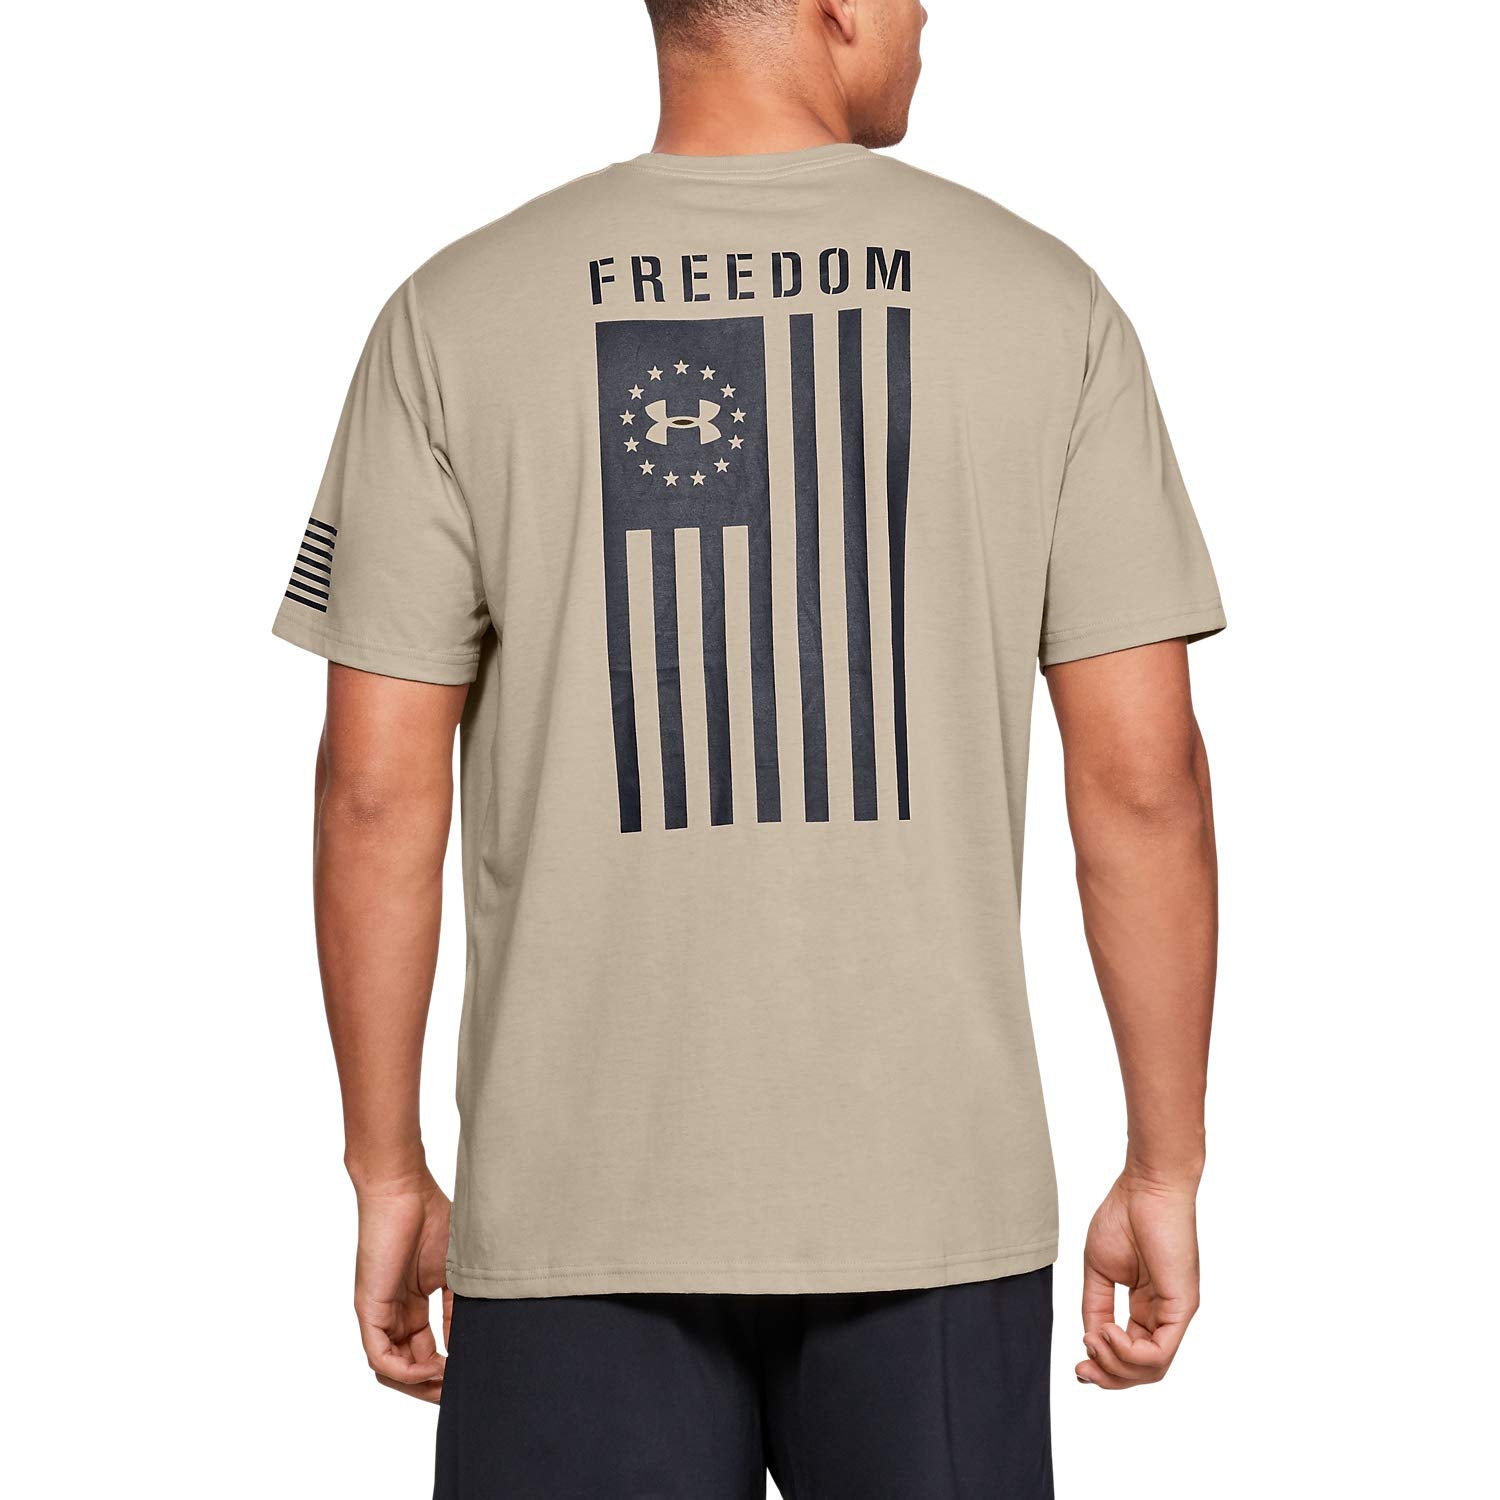 Under Armour Freedom Flag T-Shirt, Desert Sand//Black